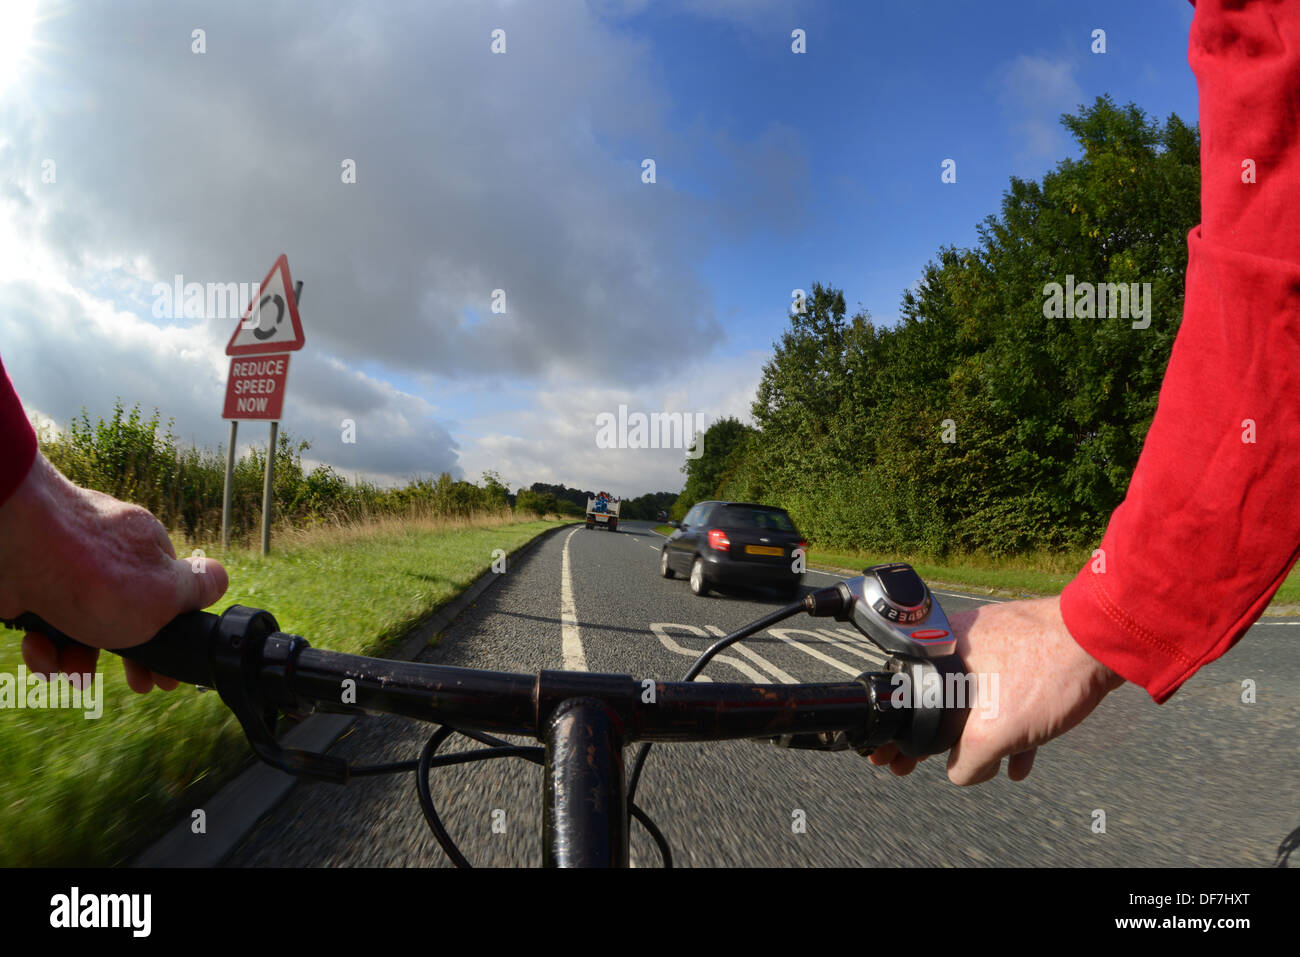 Auto überholen Radfahrer fahren Mountainbike auf Landstraße in der Nähe von LeedsYorkshire Vereinigtes Königreich Stockfoto